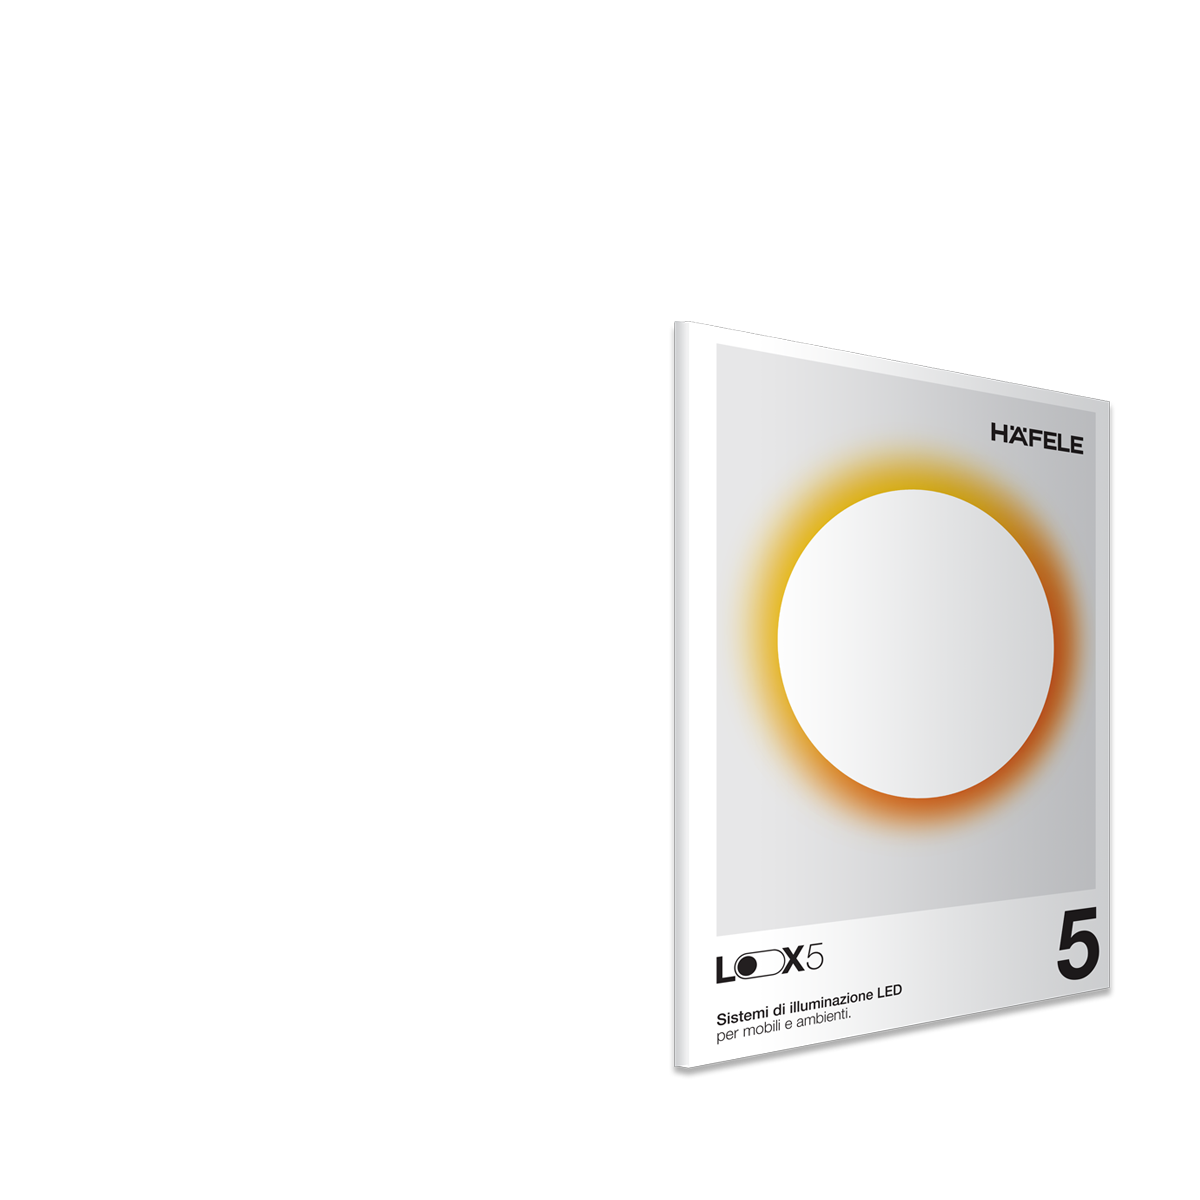 Catalogo Loox 5 – Sistemi di illuminazione LED